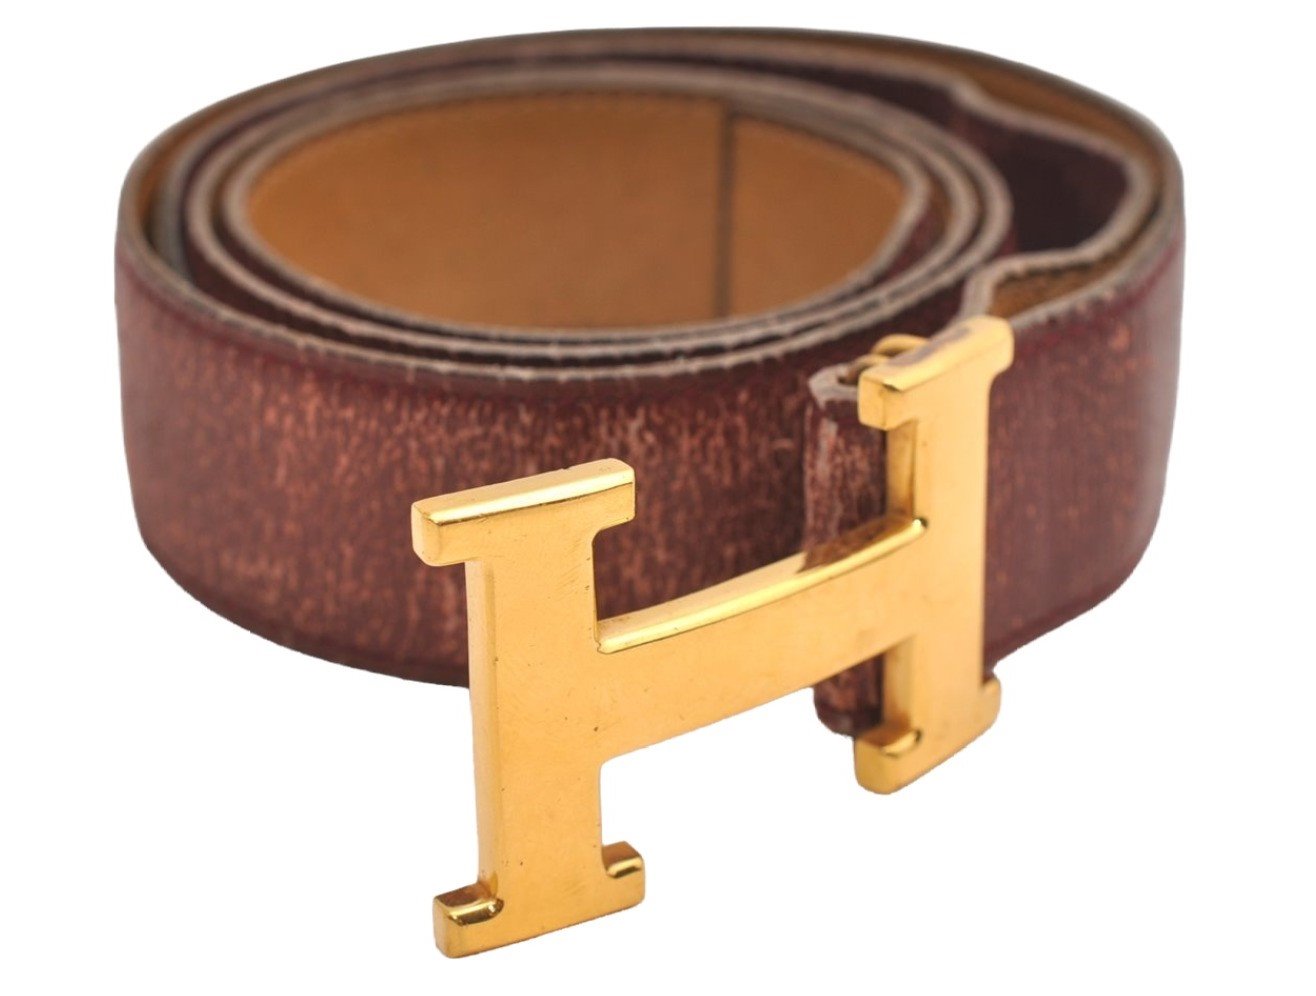 Authentic HERMES Constance Leather Belt Size 100cm 39.4